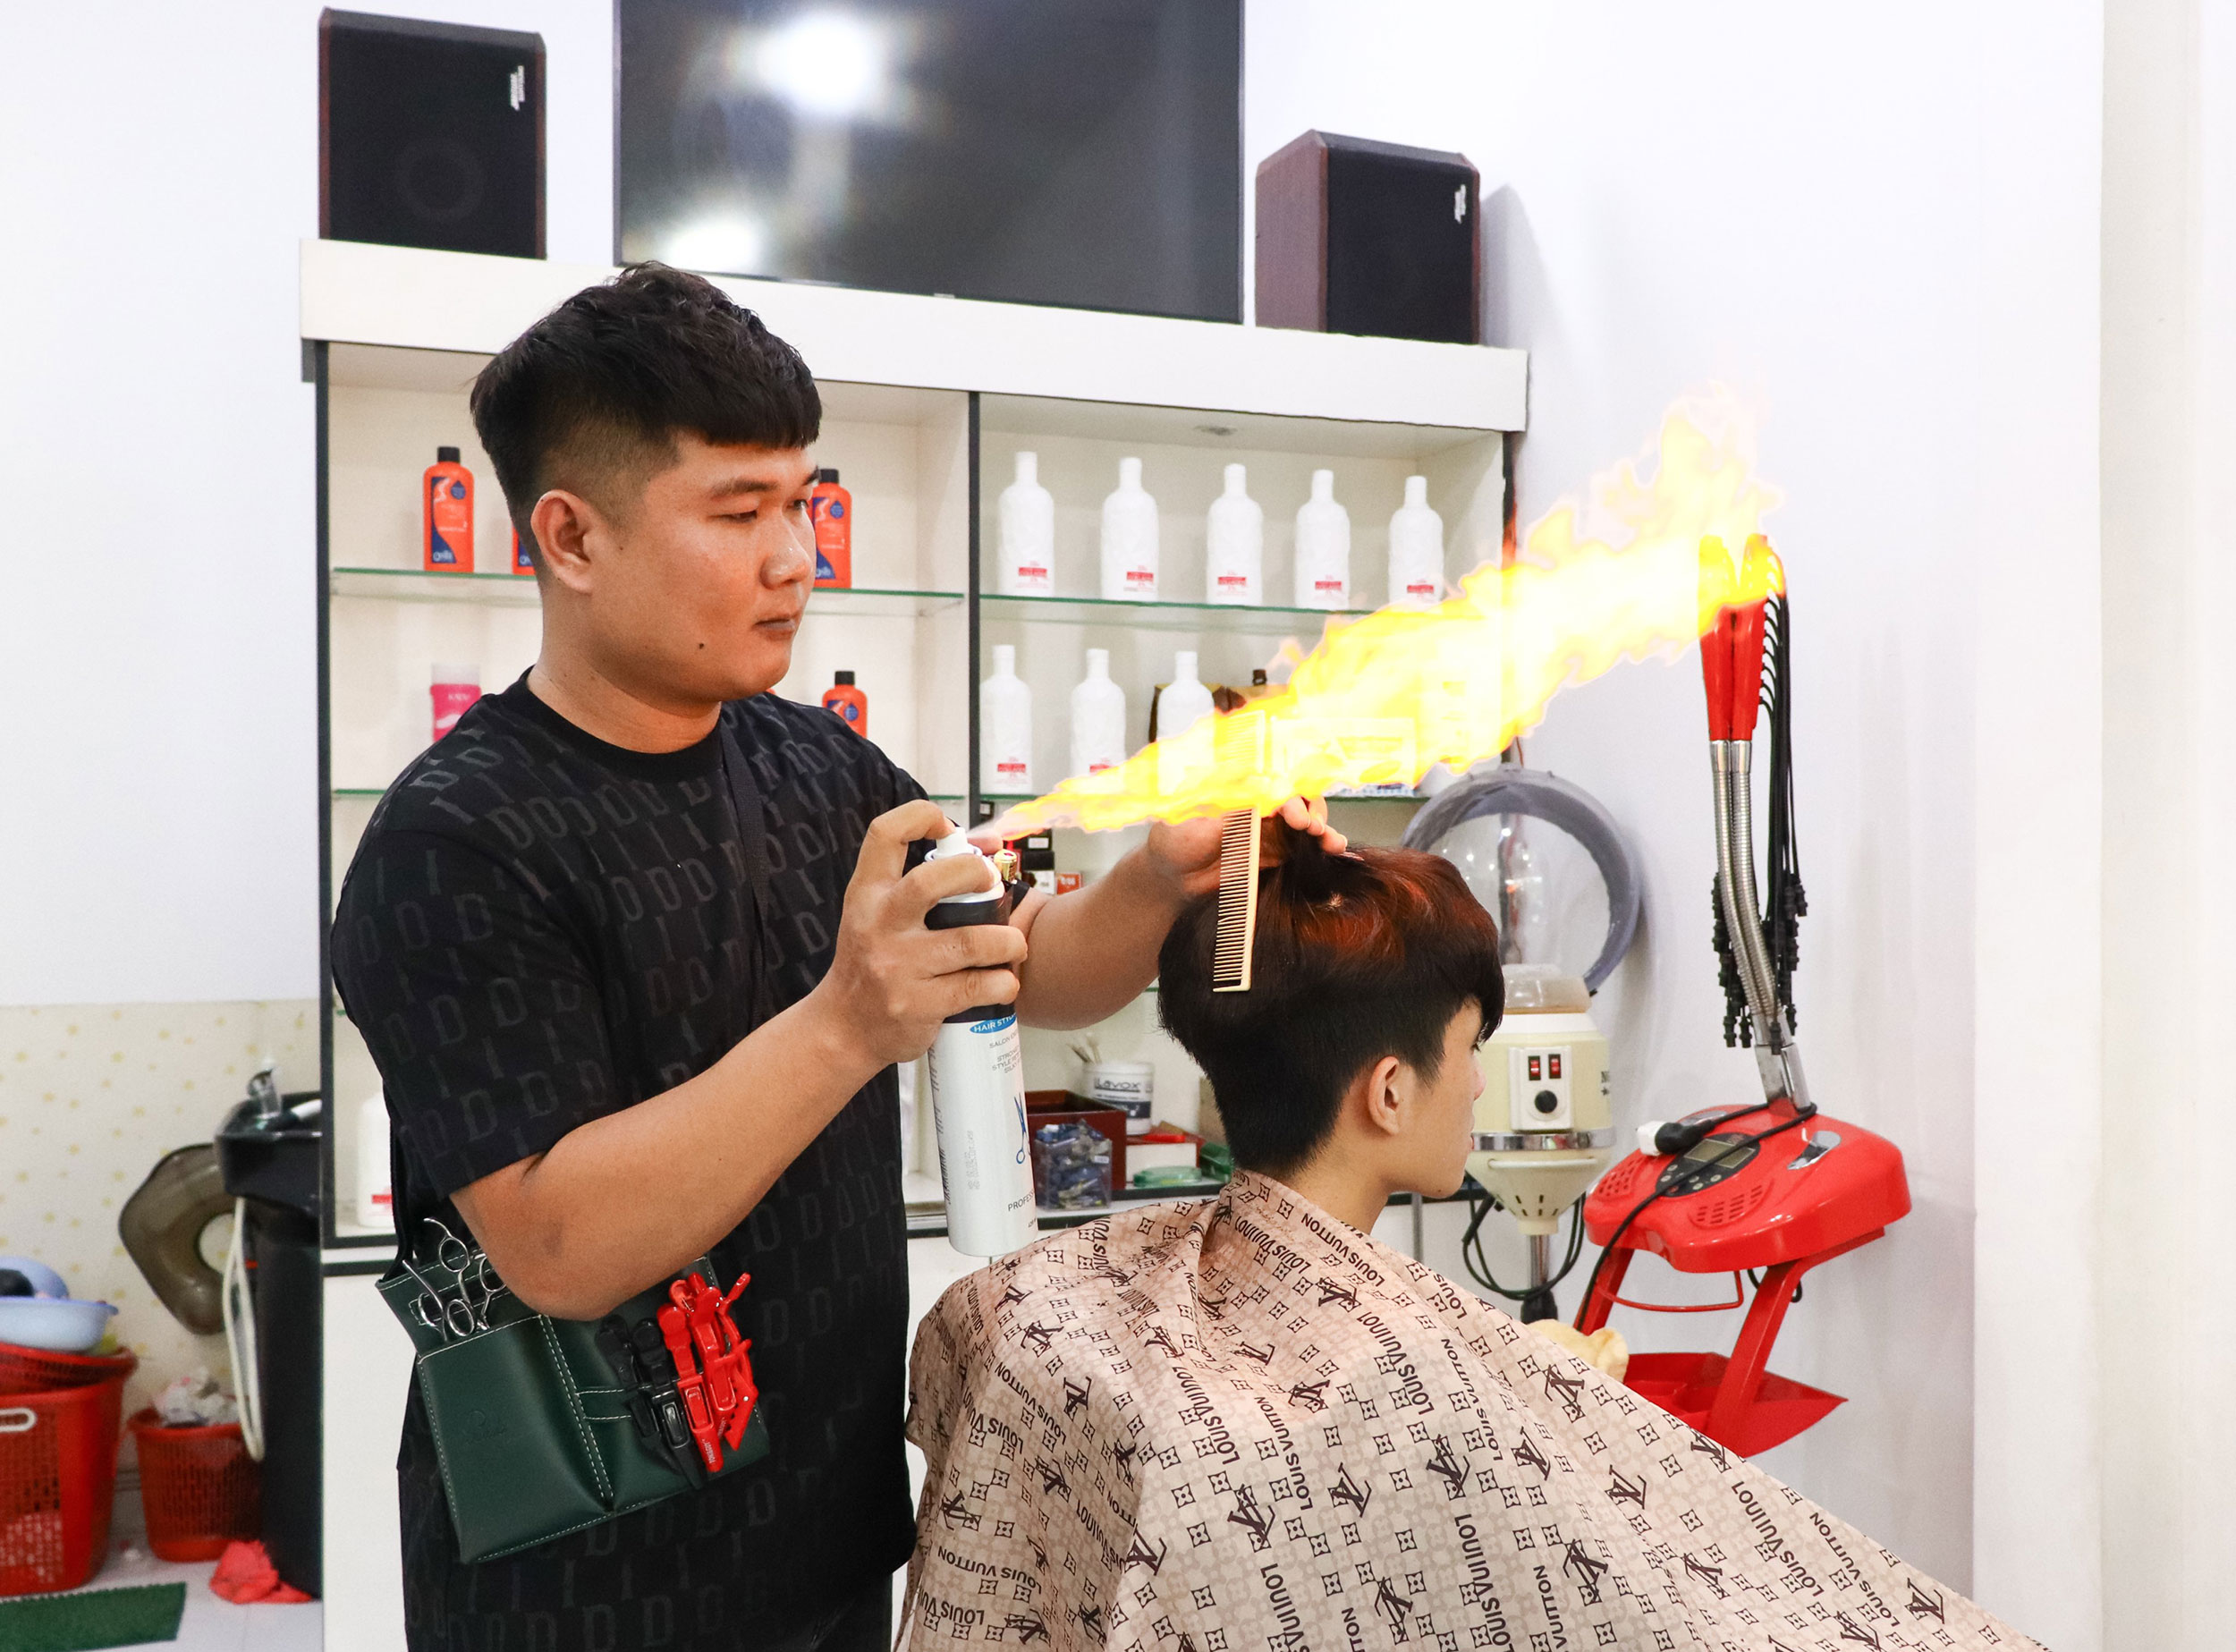 Hướng dẫn cắt tóc nam cơ bản và nâng cao Cắt bớt công đoạn dễ hiểu nhất  2021  YouTube